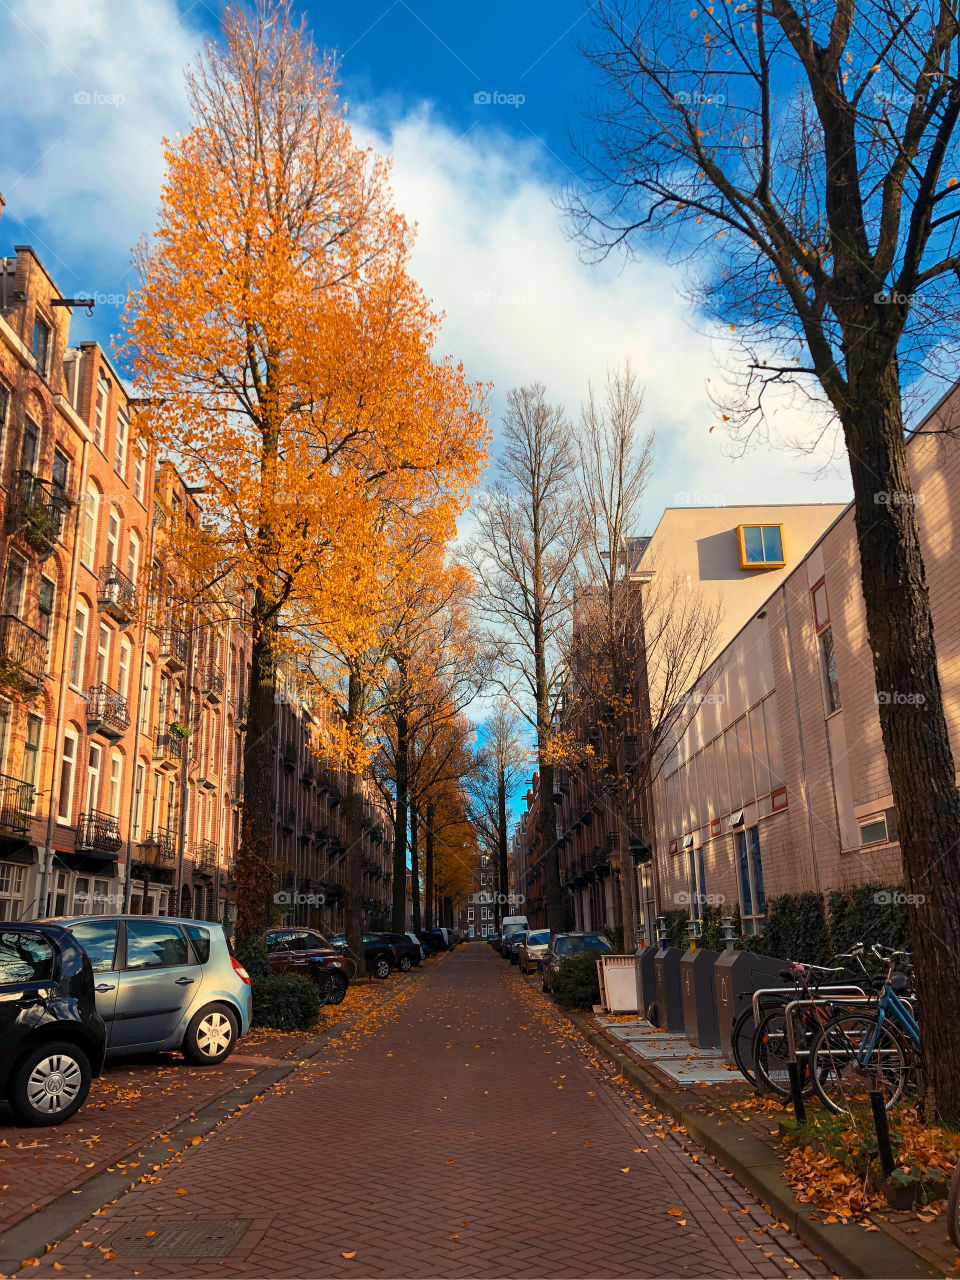 Autumn in Amsterdam December 